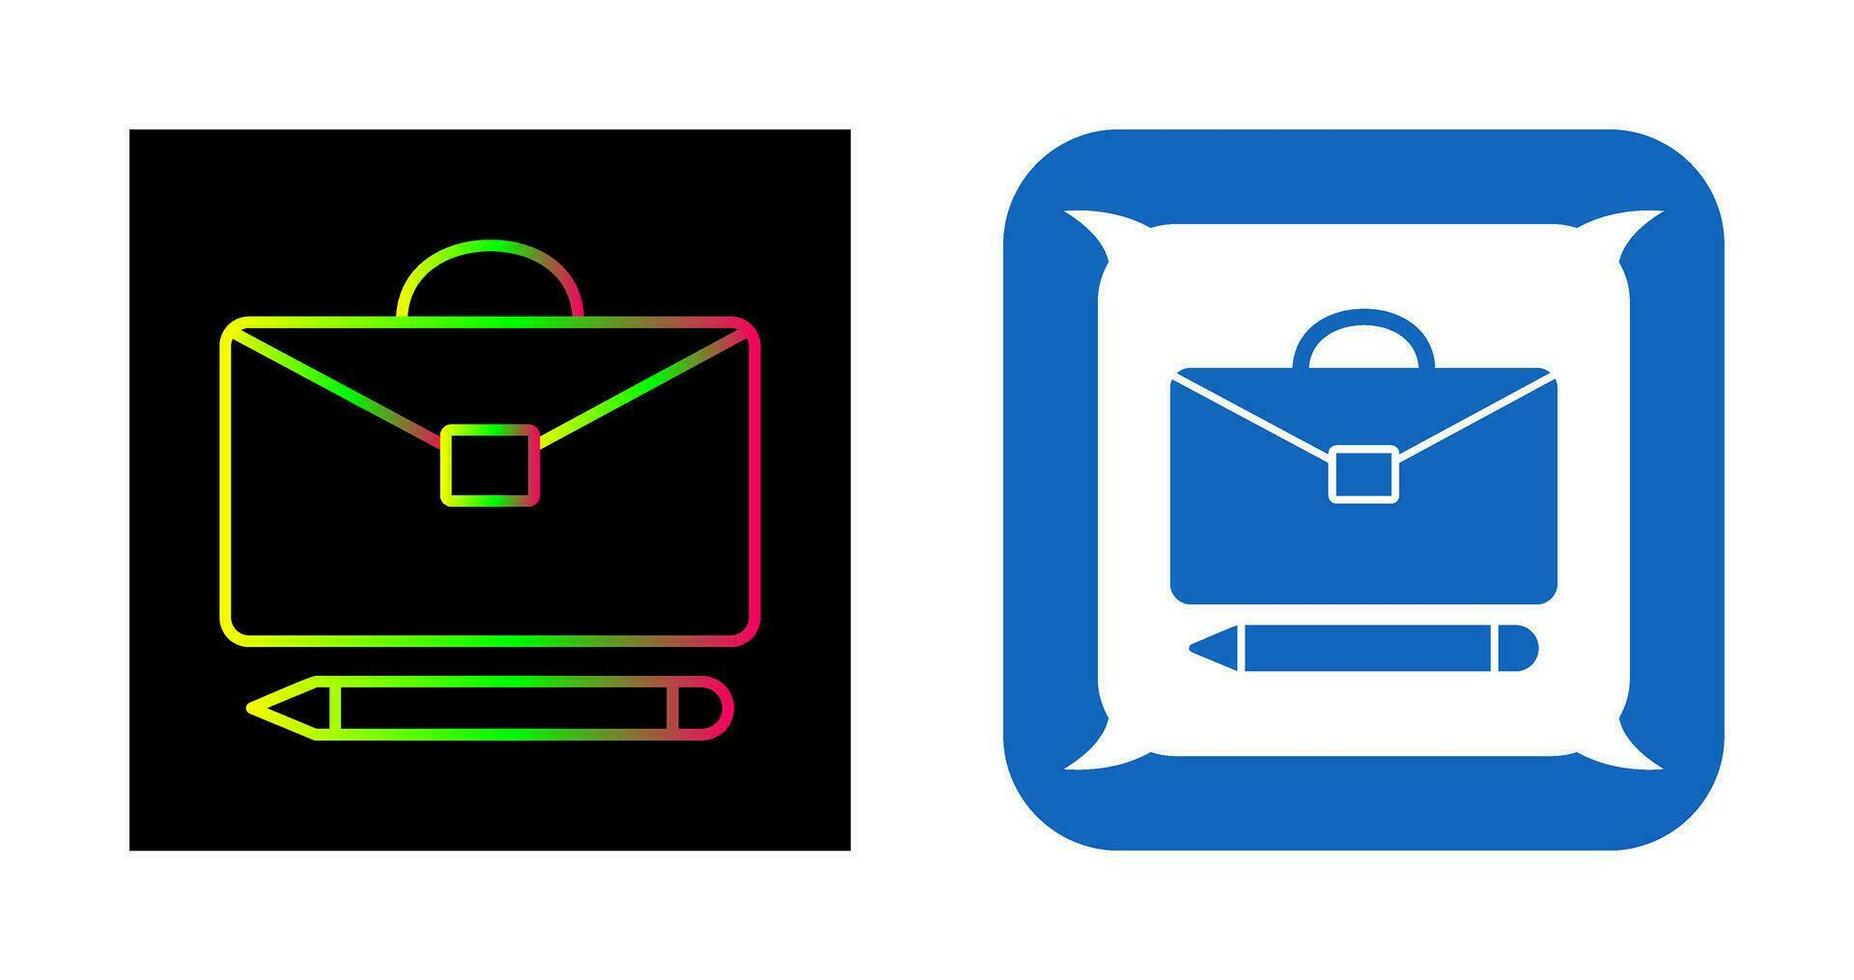 Briefcase and Pen Vector Icon